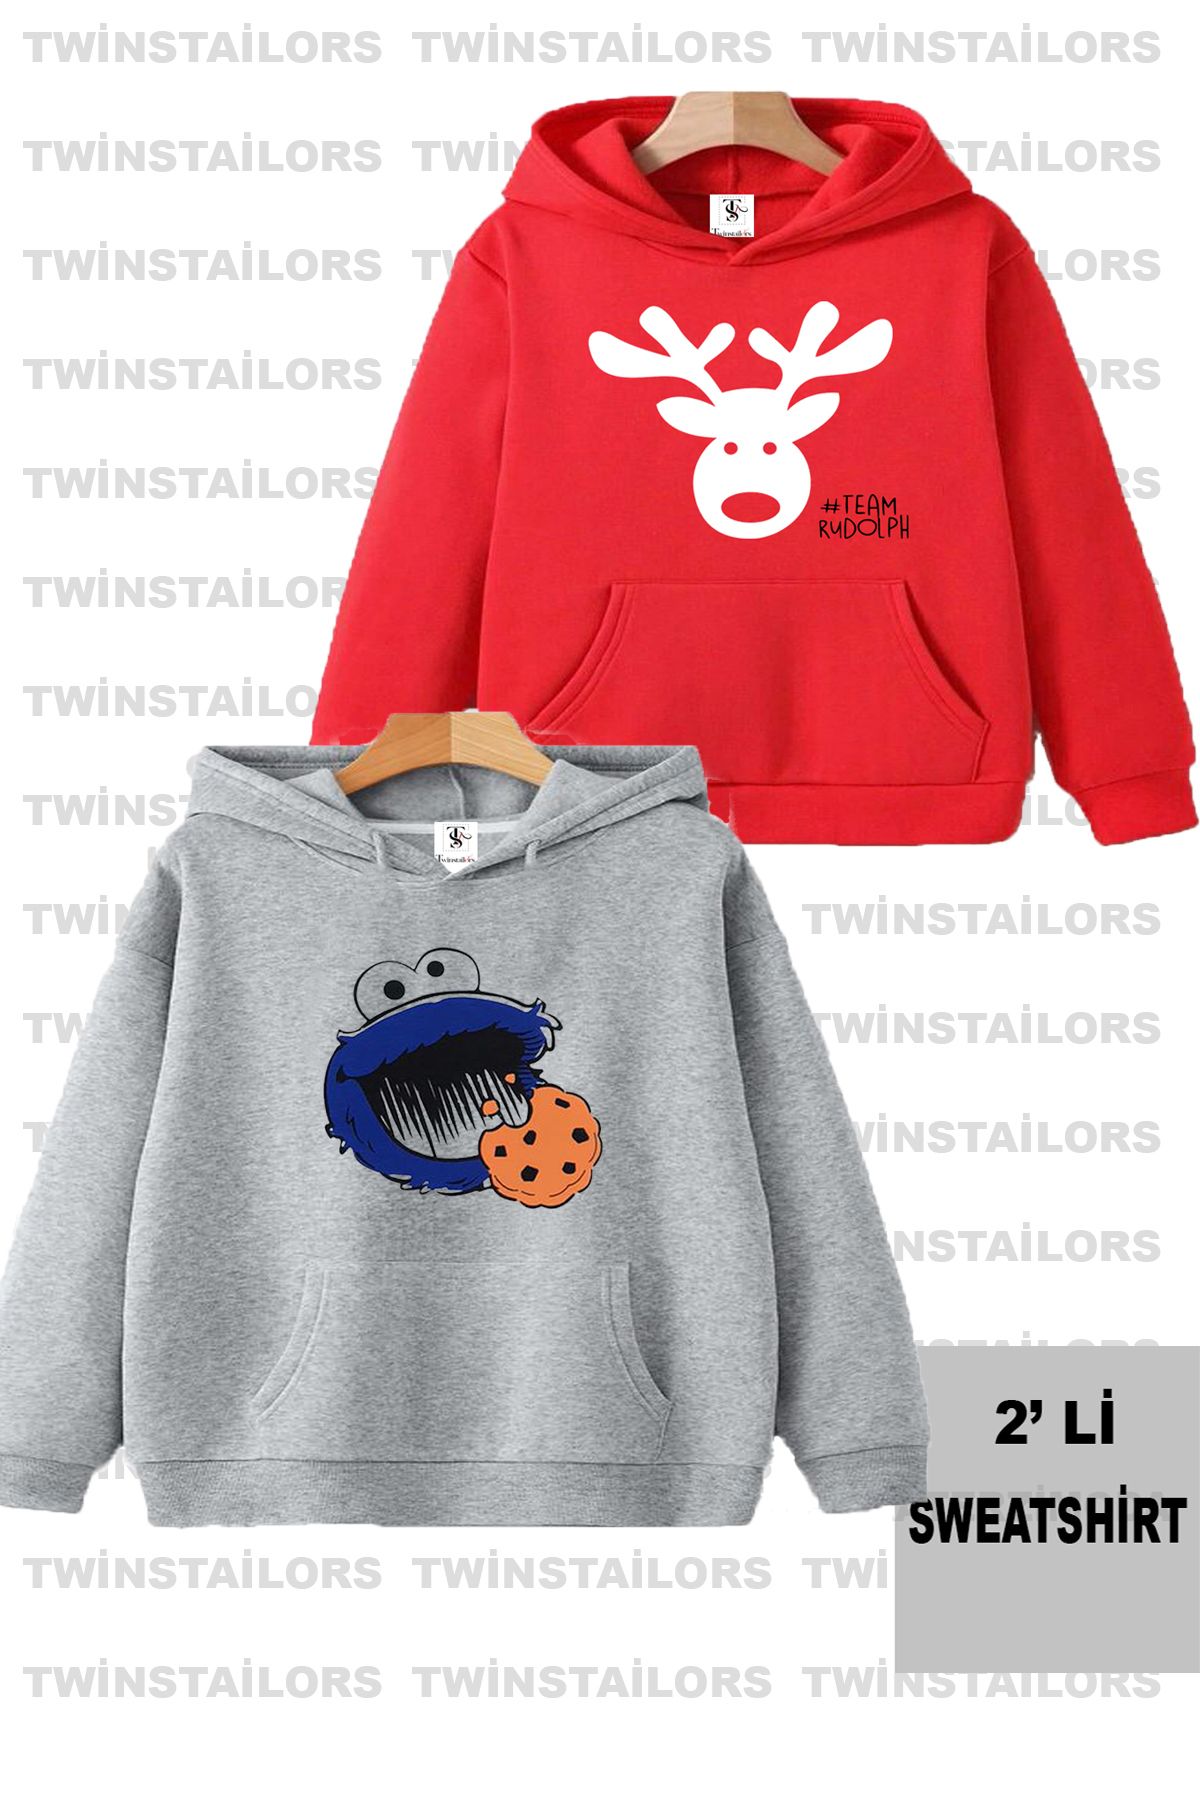 twins tailors Kurabiye Canavarlı Baskılı Unisex İkili Paket Gri-Kırmızı Çocuk Kapüşonlu Sweatshirt Hoodie